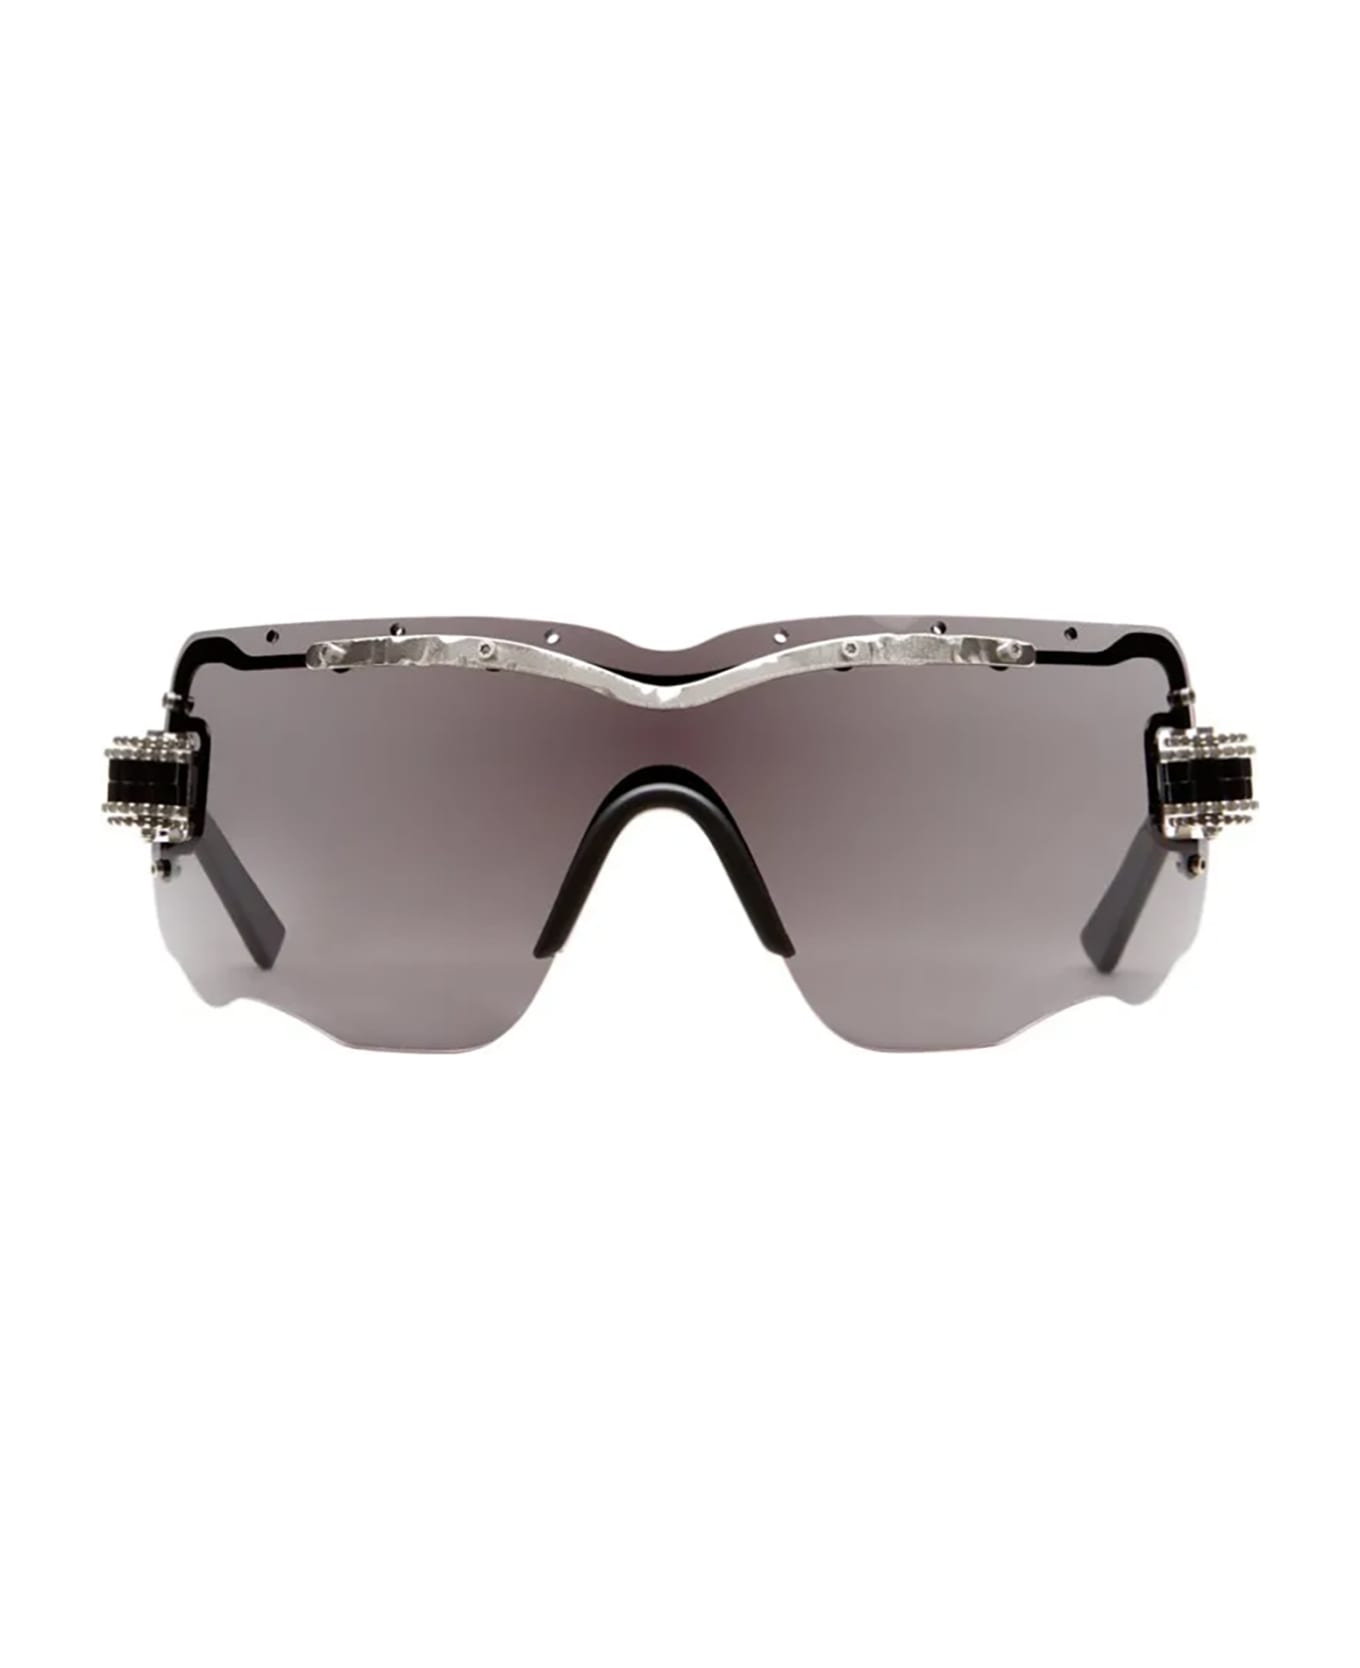 Kuboraum E15 Sunglasses - Si Darkg サングラス